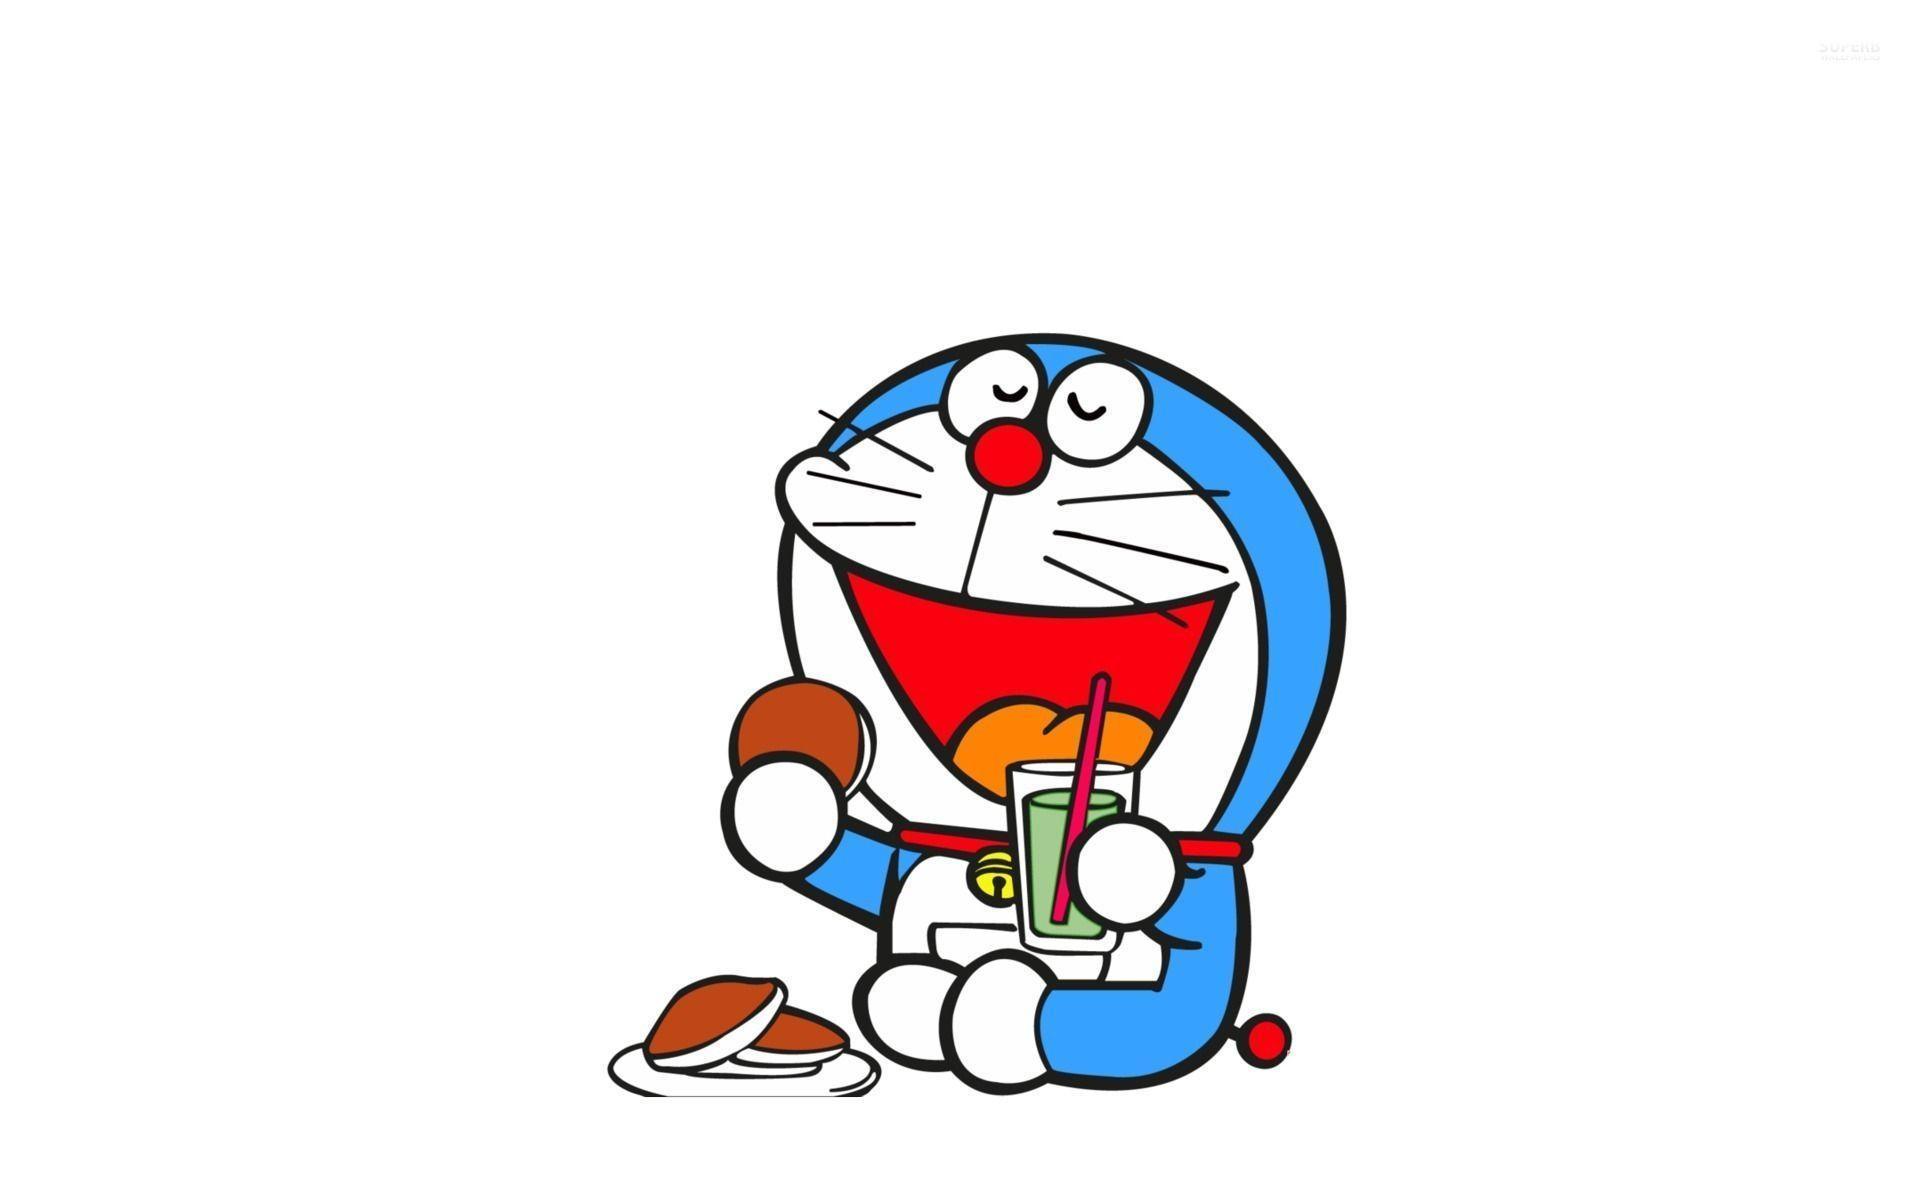 Hình nền Doraemon đủ các loại, phong cách và kích thước sẽ giúp bạn tìm thấy bức ảnh yêu thích của mình một cách dễ dàng. Từ những hình ảnh đơn giản đến những bức tranh đầy tài năng, các hình nền Doraemon đều chứa đựng giá trị tuyệt vời và sẽ khiến bạn cười nhiều hơn.